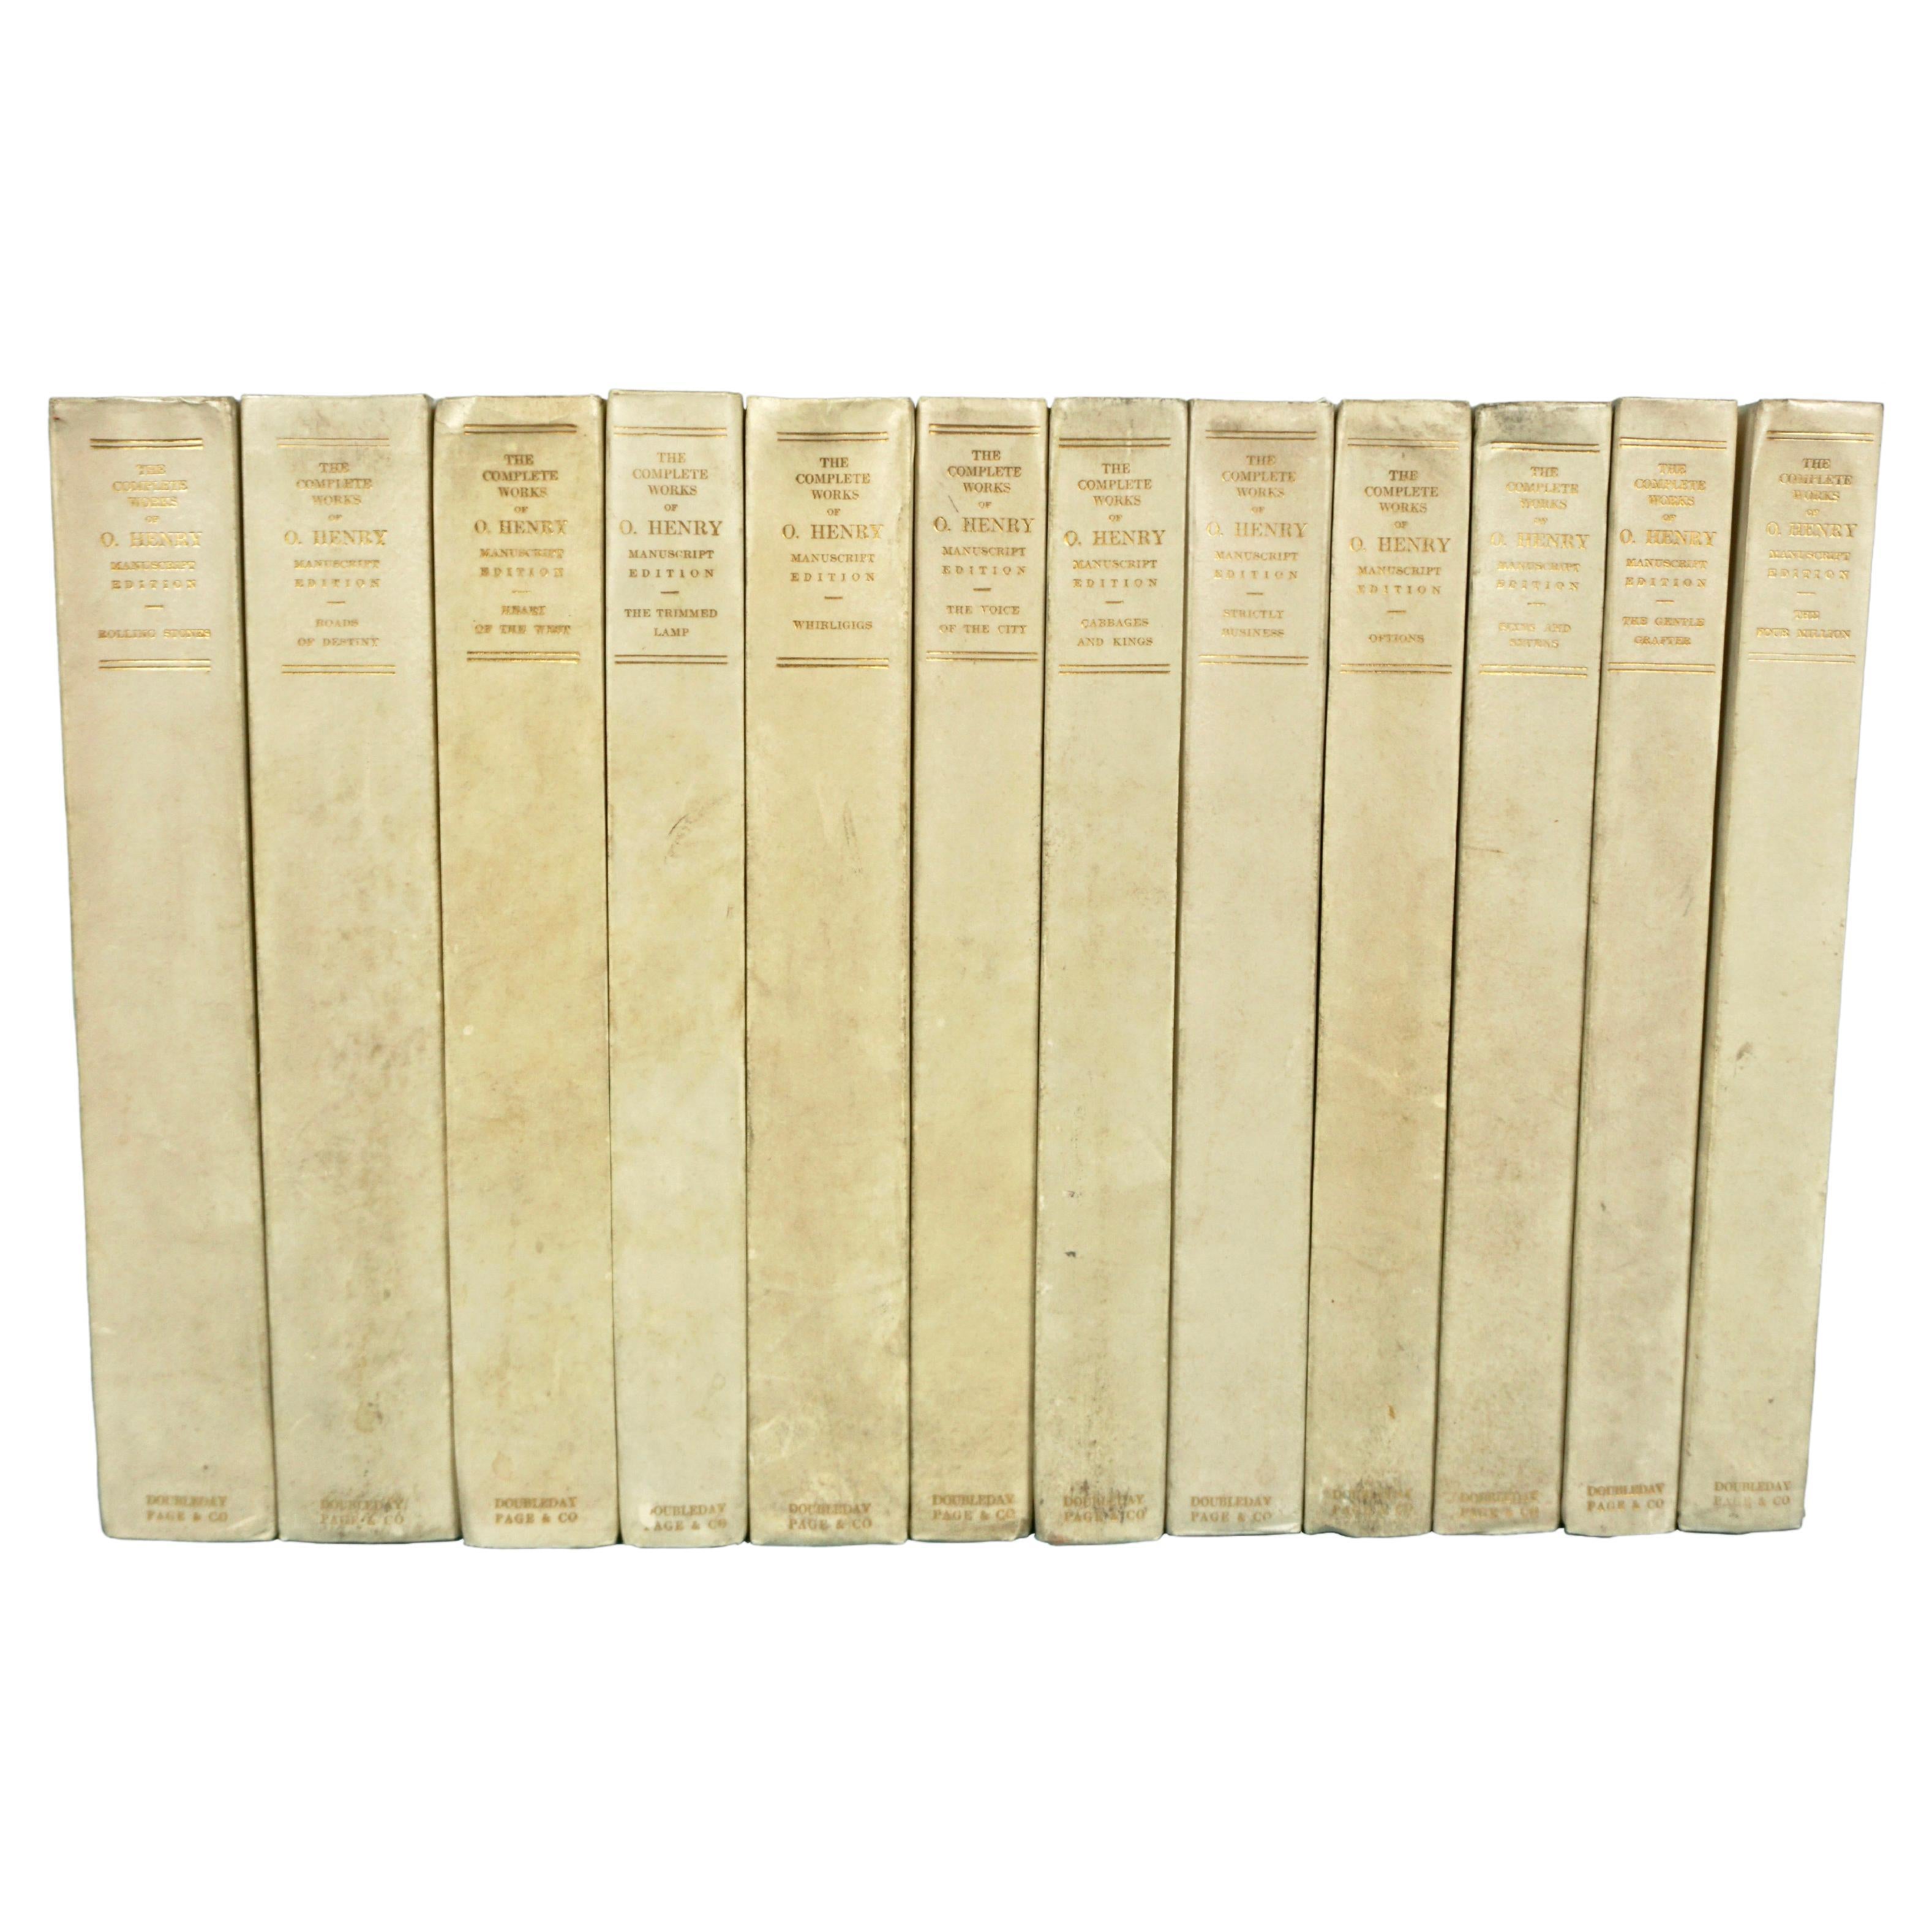 Las obras completas de O. Henry, edición manuscrita limitada a 125 ejemplares